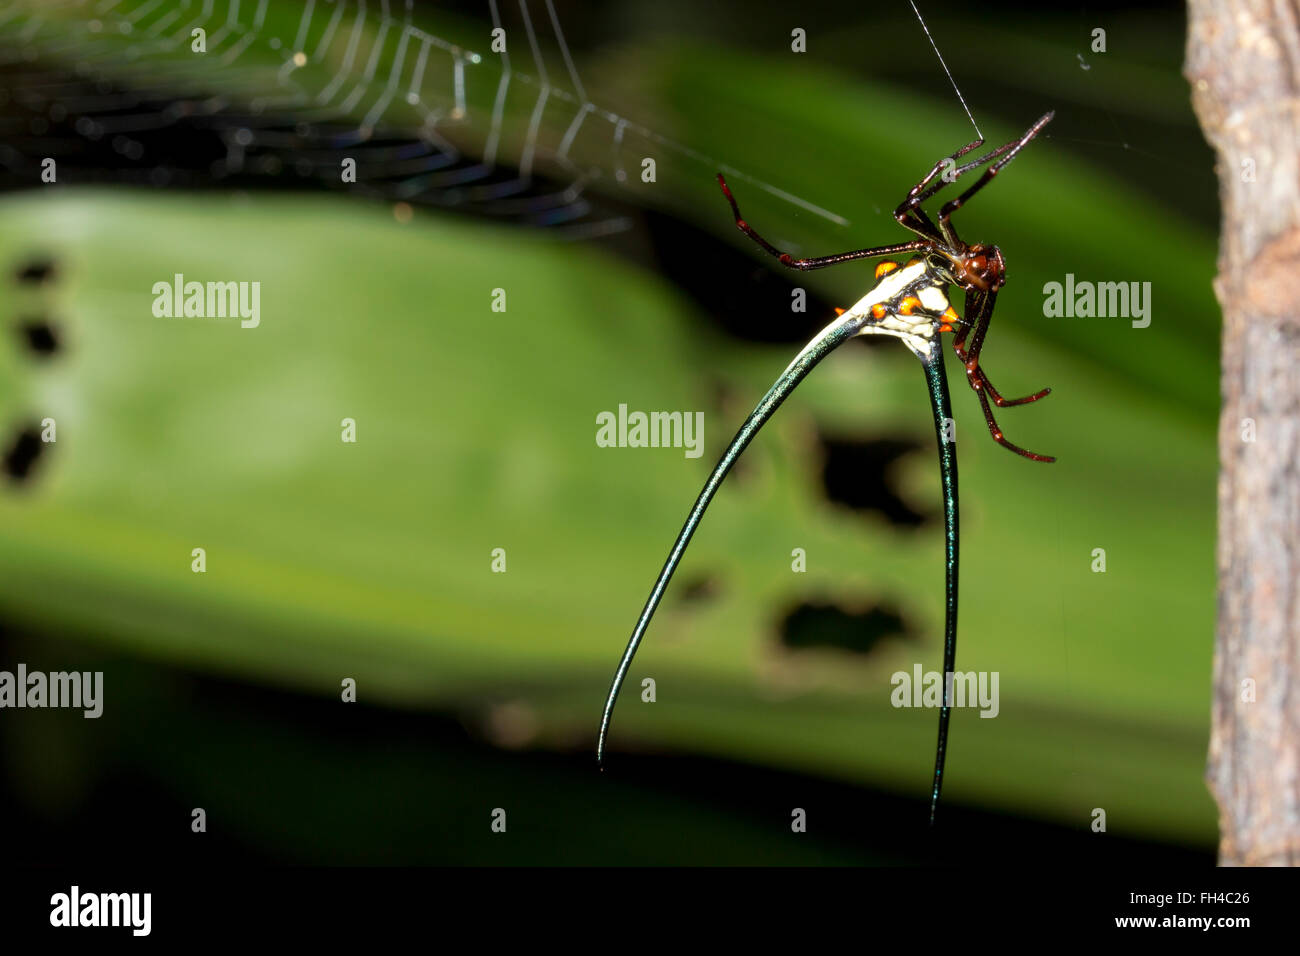 Spinosa spider (Micranthena cyanospina) nel suo web nella provincia di Pastaza, l'Amazzonia ecuadoriana. Foto Stock